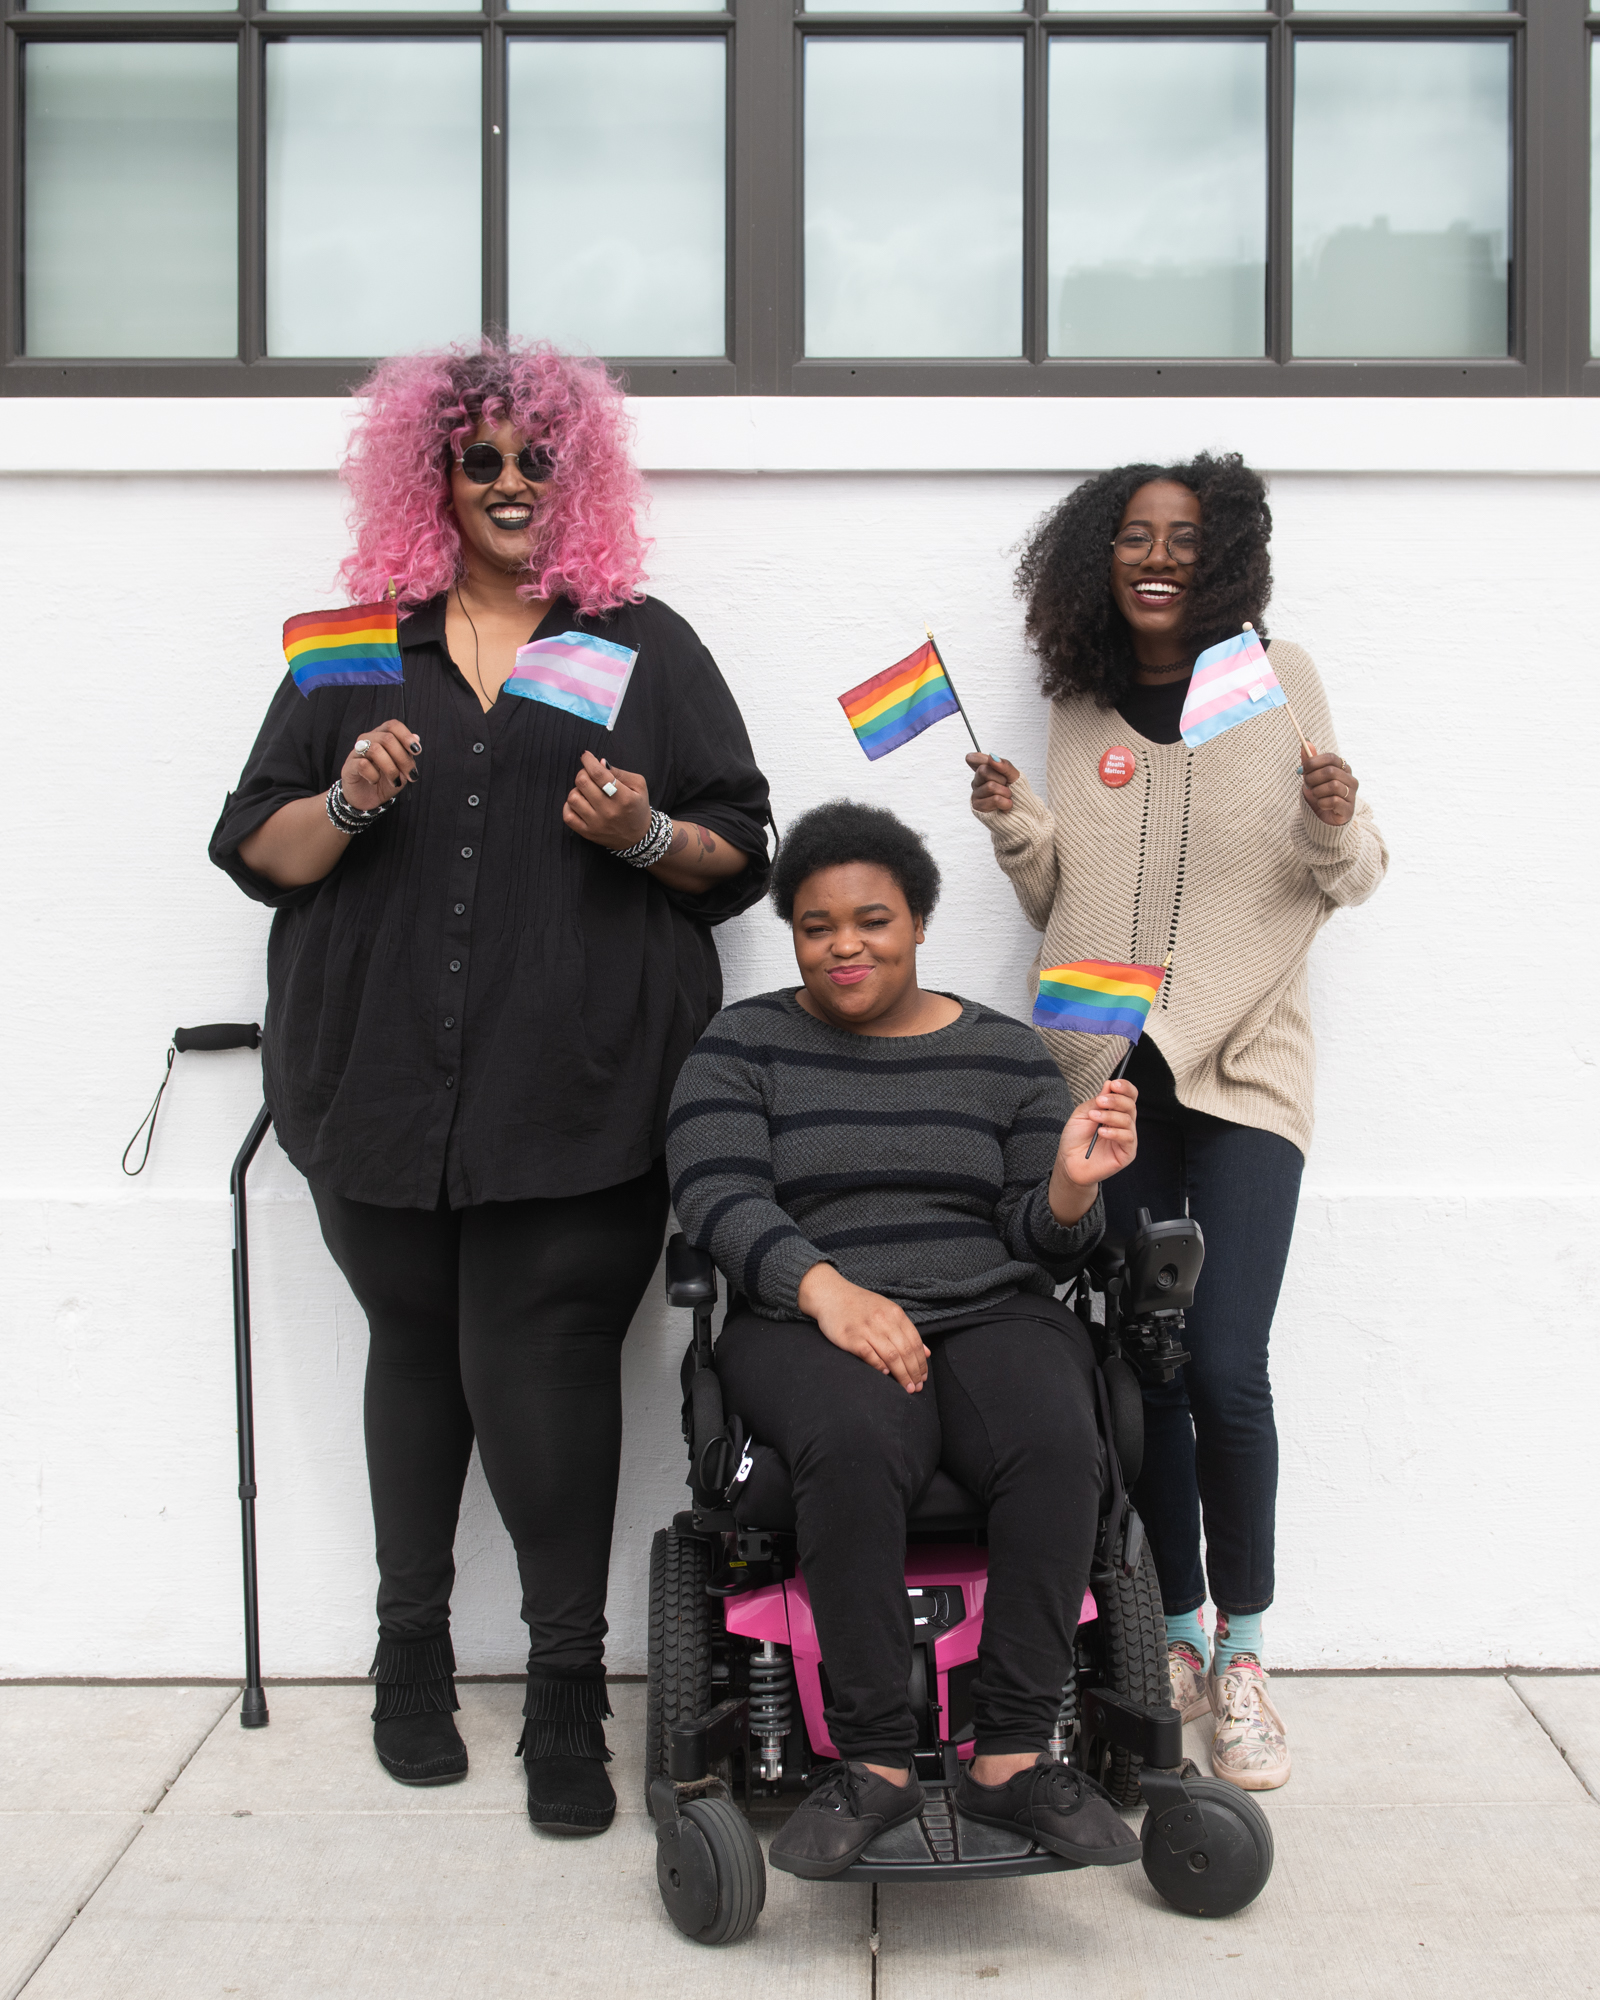 Tres negros y discapacitados, dos de ellos no binarios, sonríen y sostienen banderas de orgullo mini LGBT y transgénero.